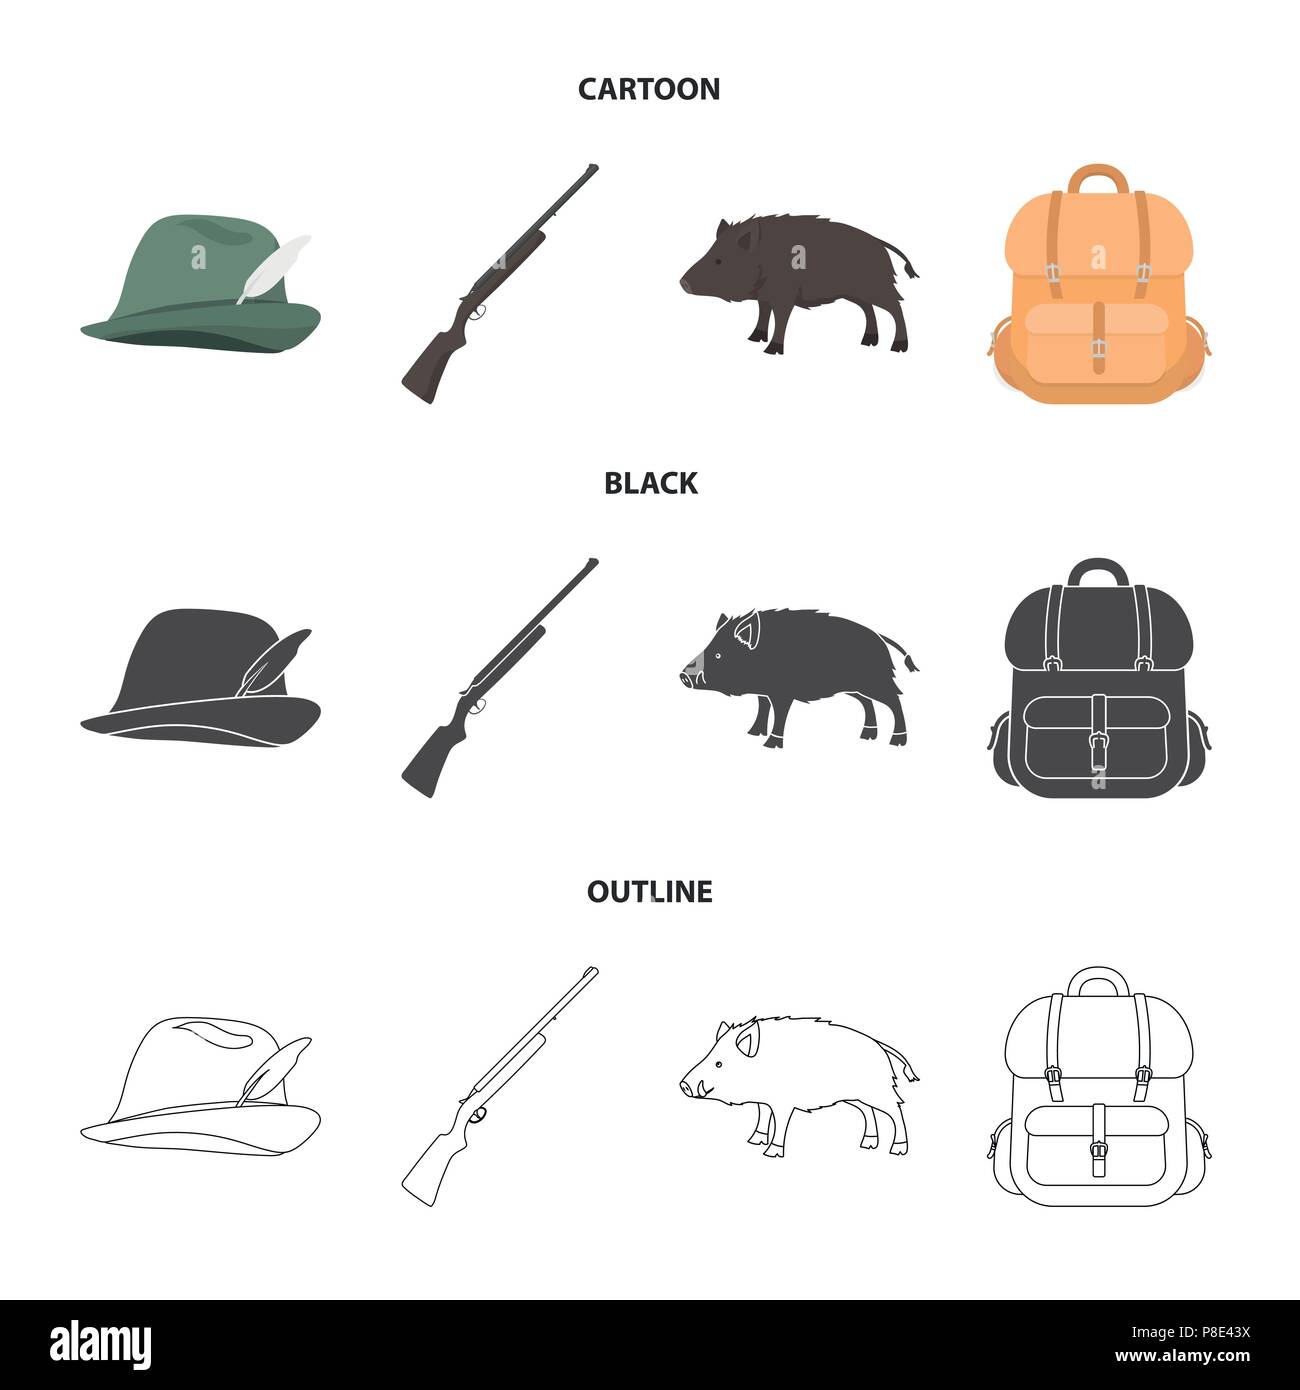 Eine Jagd Hut mit einer Feder, ein Wildschwein, ein Gewehr, einen Rucksack  mit Sachen. Jagdausrüstung Sammlung Icons im Cartoon, schwarz, Outline  style Vektor Symbol Stock-Vektorgrafik - Alamy